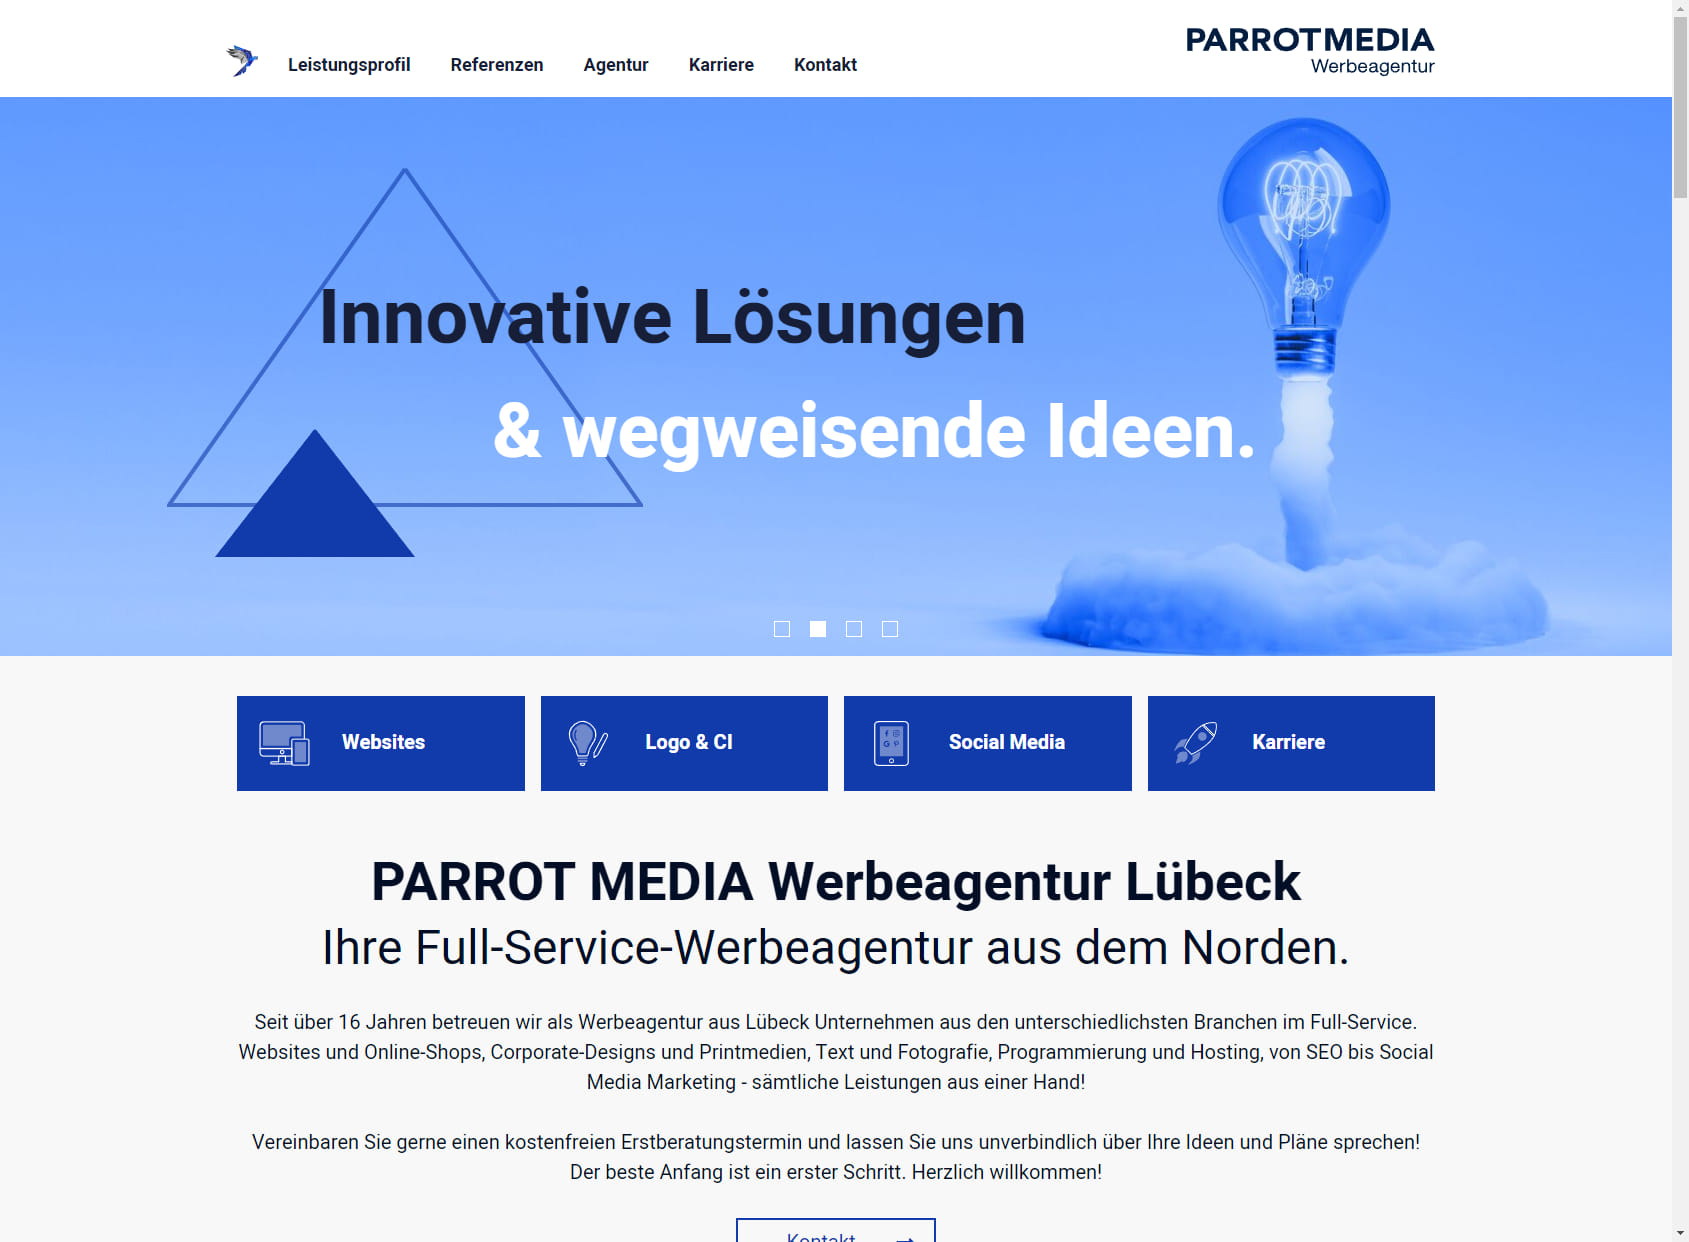 PARROT MEDIA - advertising agency Lübeck